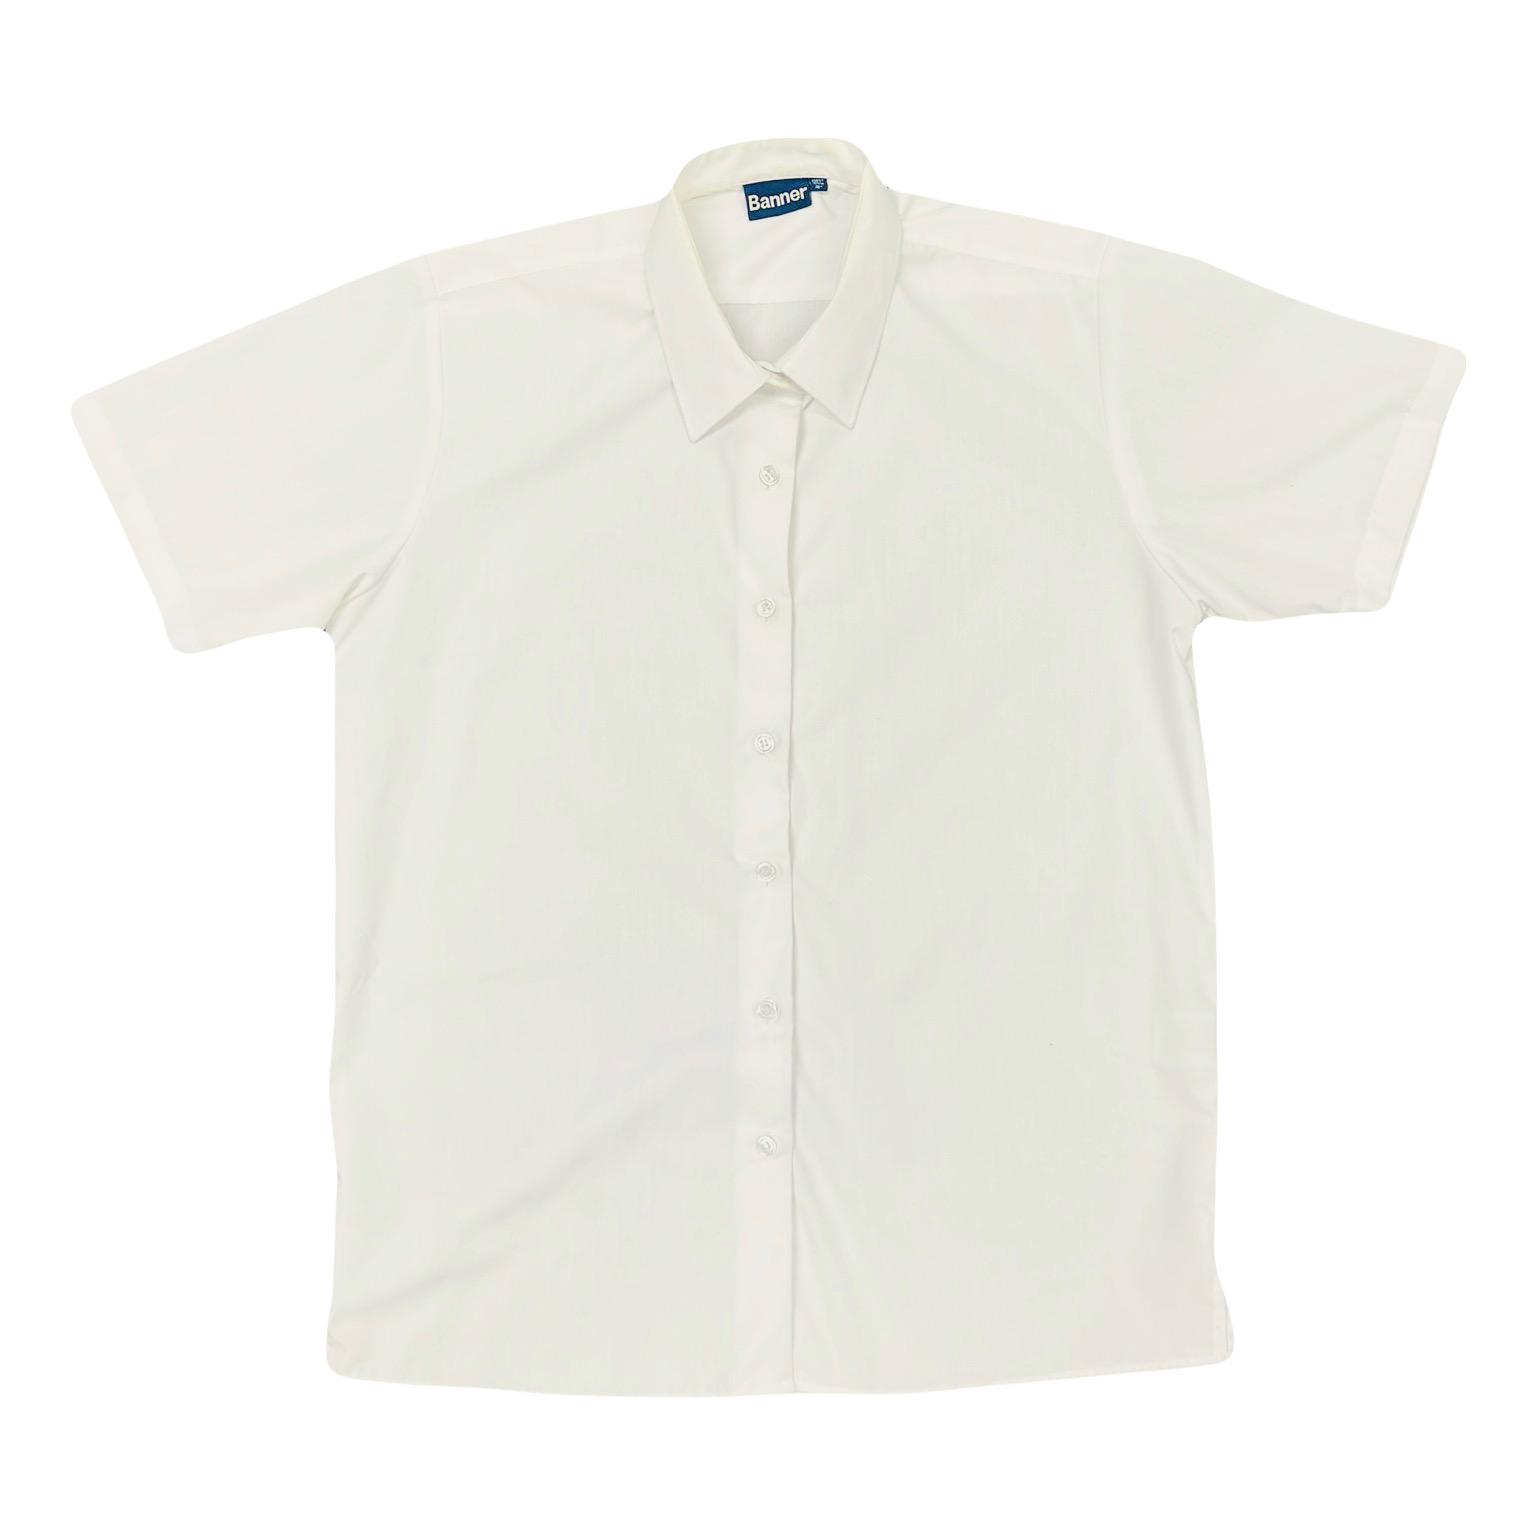 Girls Button up Shirt, short sleeve – 2 pack